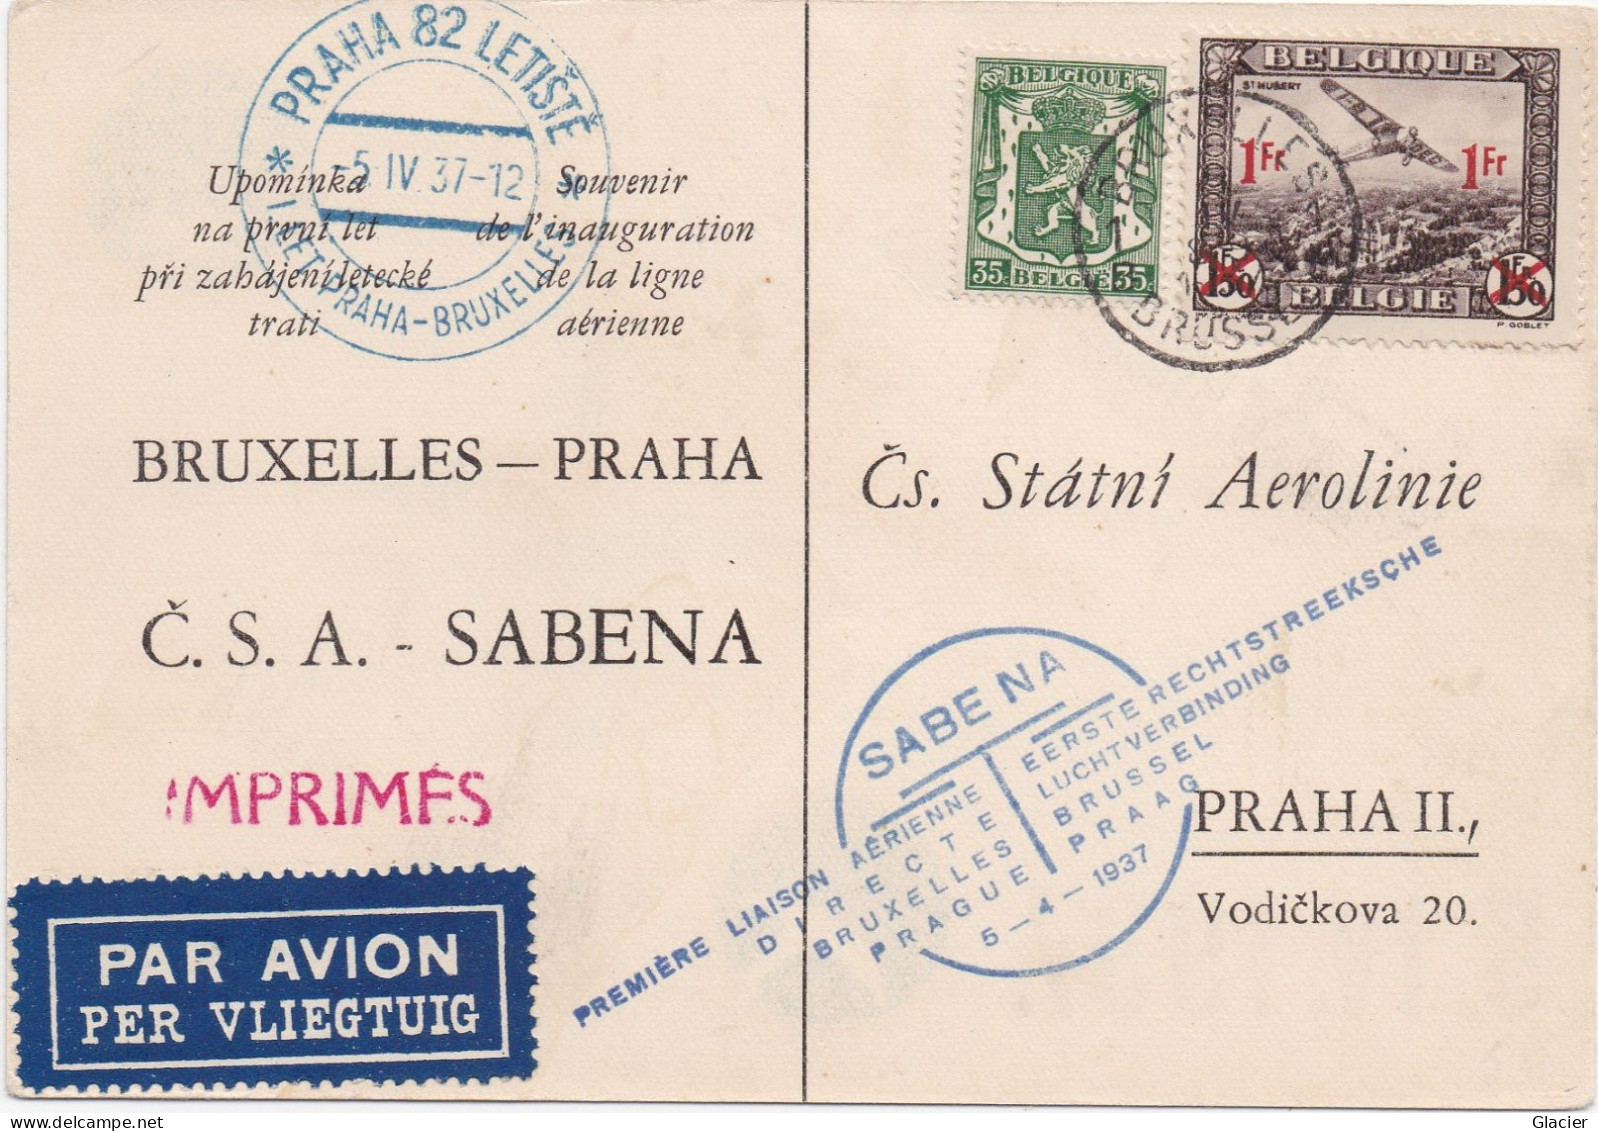 Sabena - Bruxelles-Praha - Liaison Aërienne 5-4-1937 - Č.S.A.-SABENA - Čs. Státni Aerolinie Praha II - Lettres & Documents